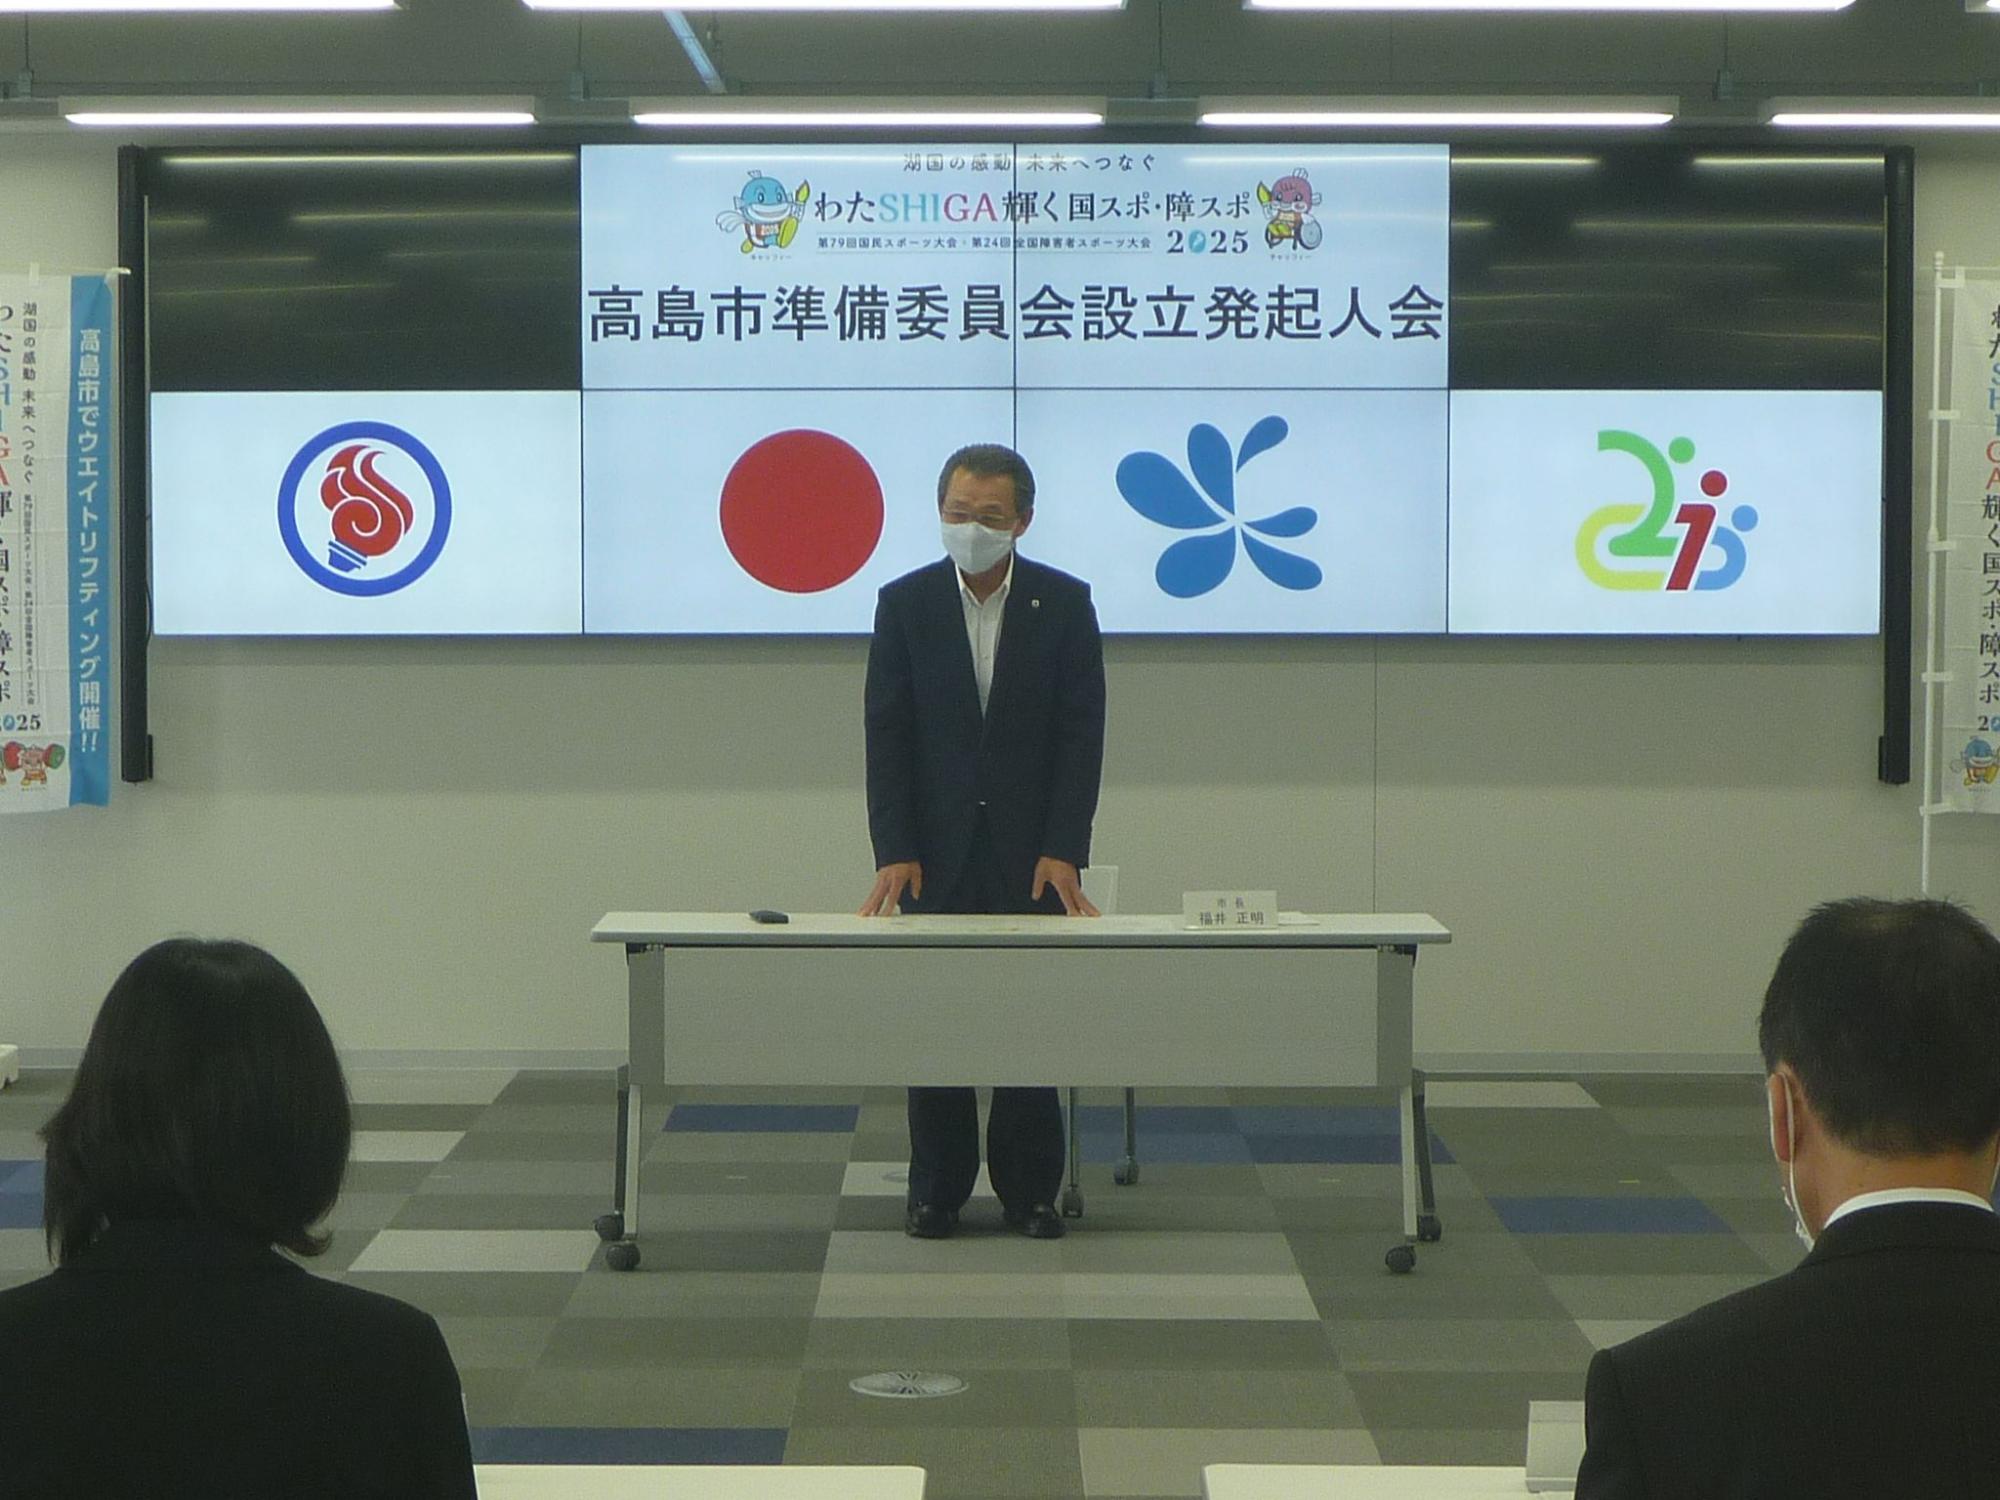 「高島市準備委員会設立発起人会」と書かれたボードの前に立ち話をしている福井市長の写真